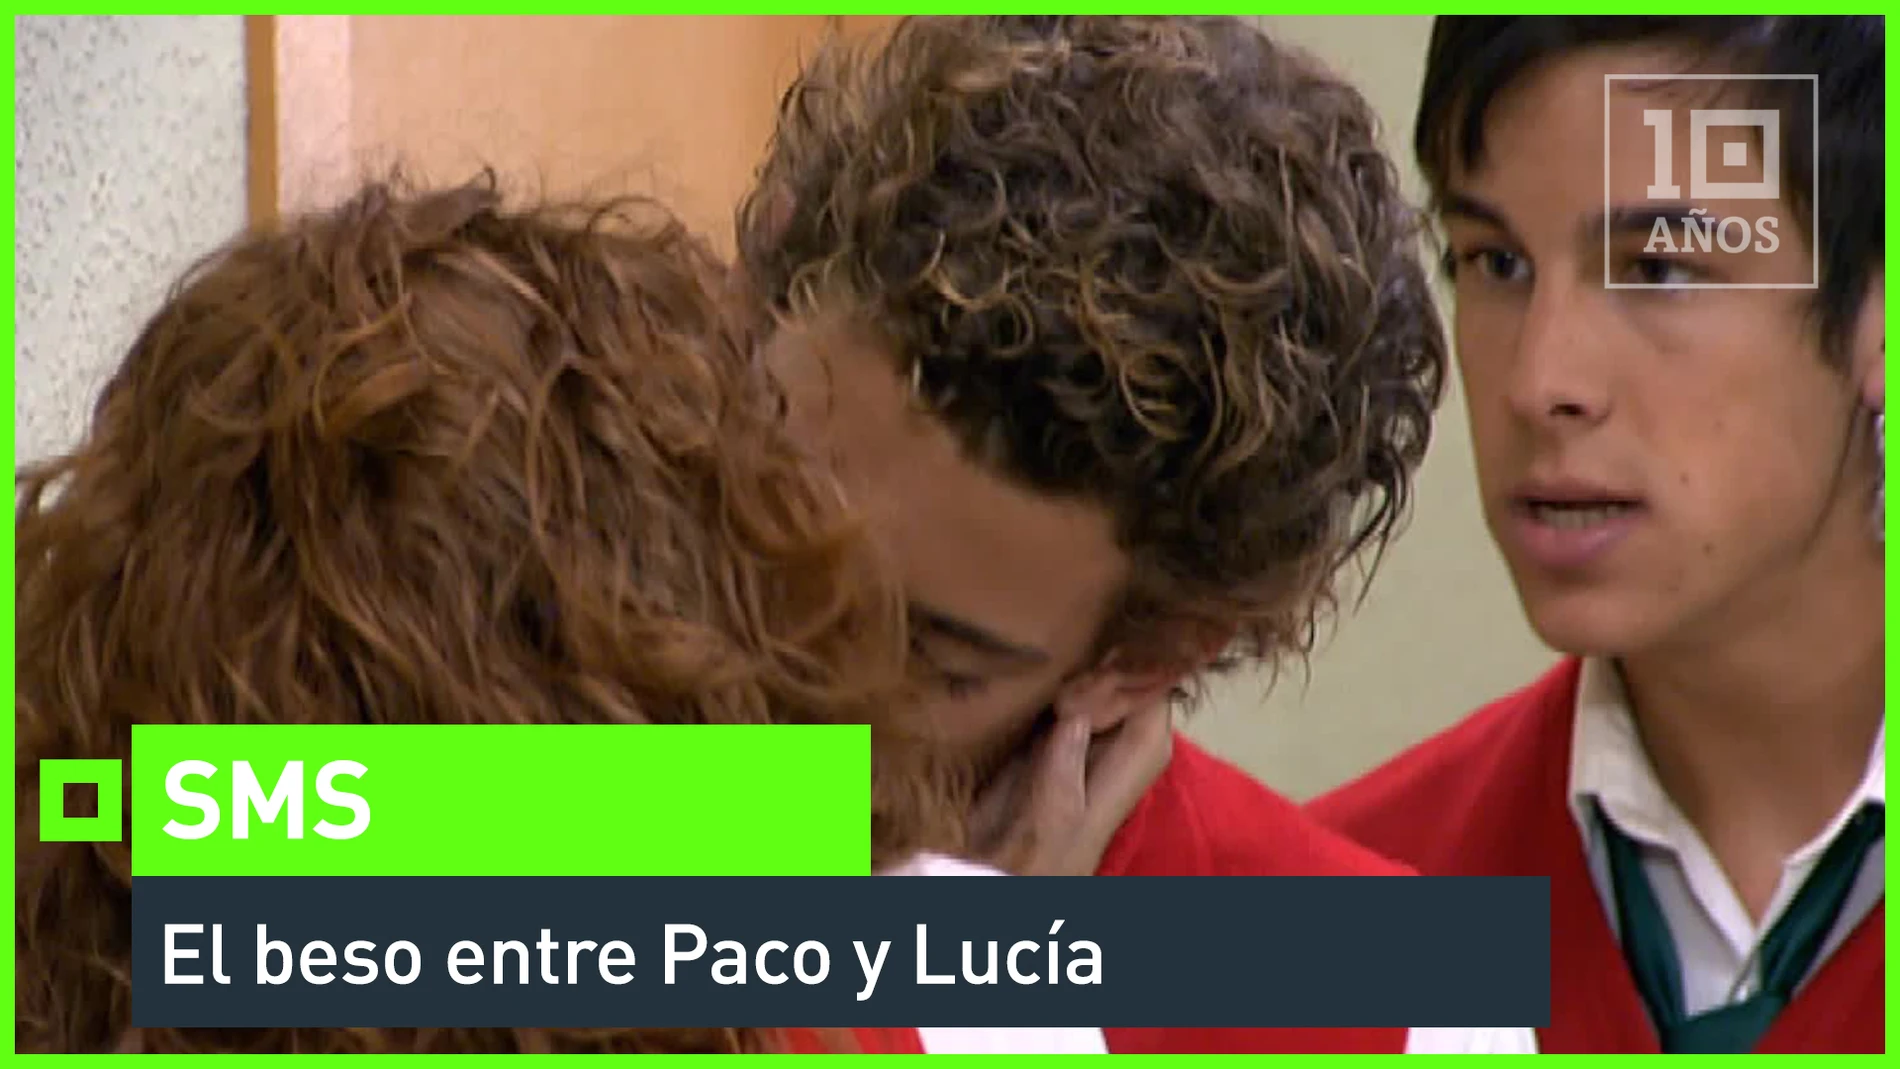 El beso entre Paco y Lucía